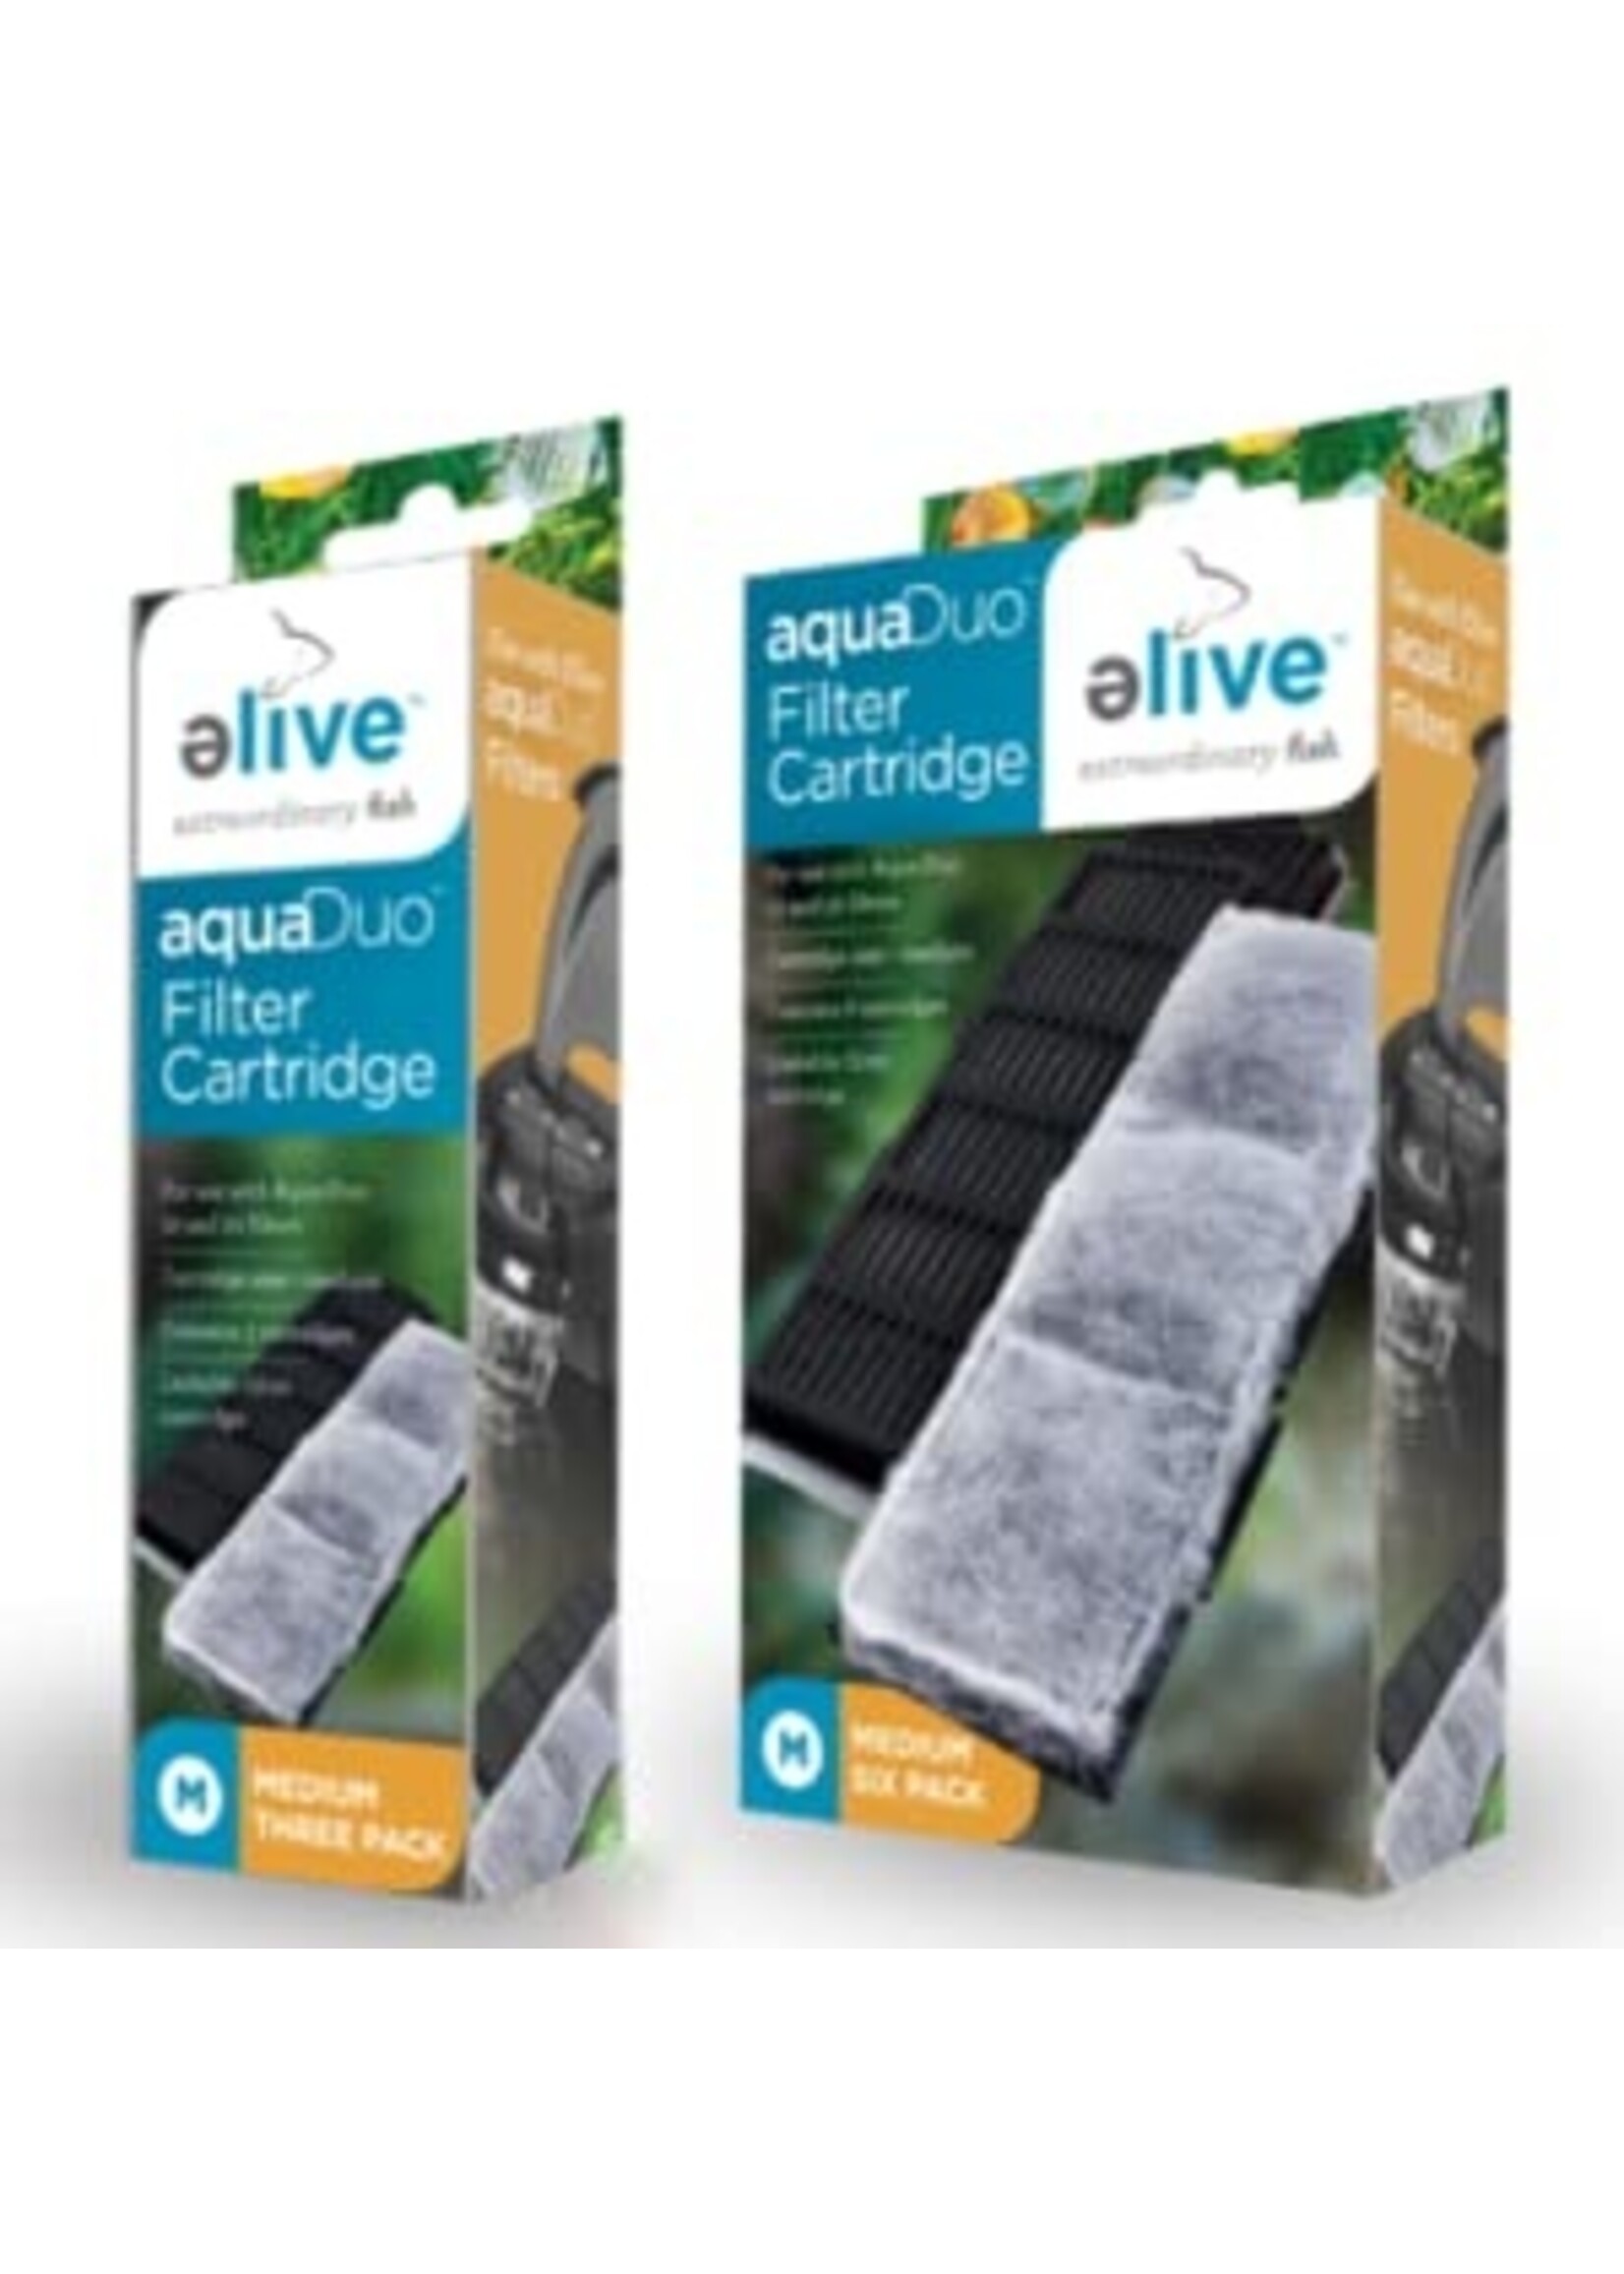 Elive Elive AquaDuo Filter Cartridge Medium 3pack